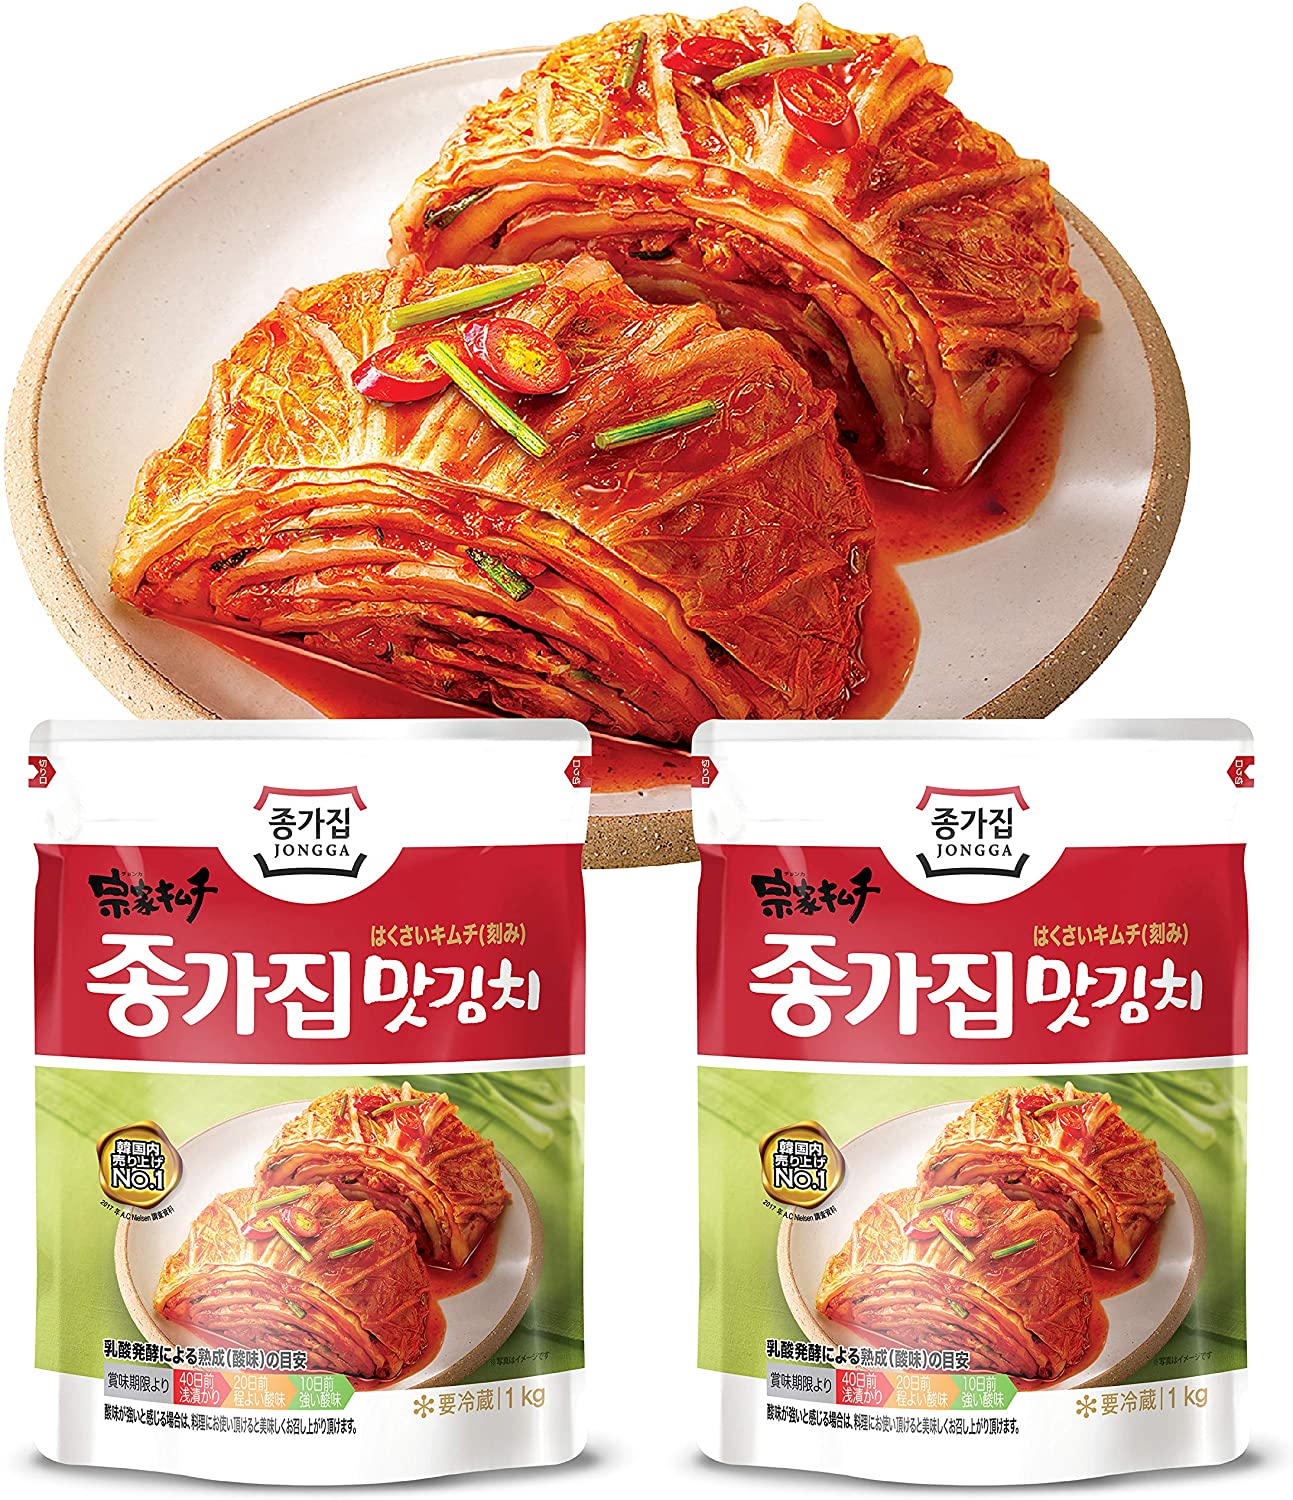 韓国 宗家 チョンガクキムチ 500g x 3袋 キムチ 韓国 食品 食材 料理 